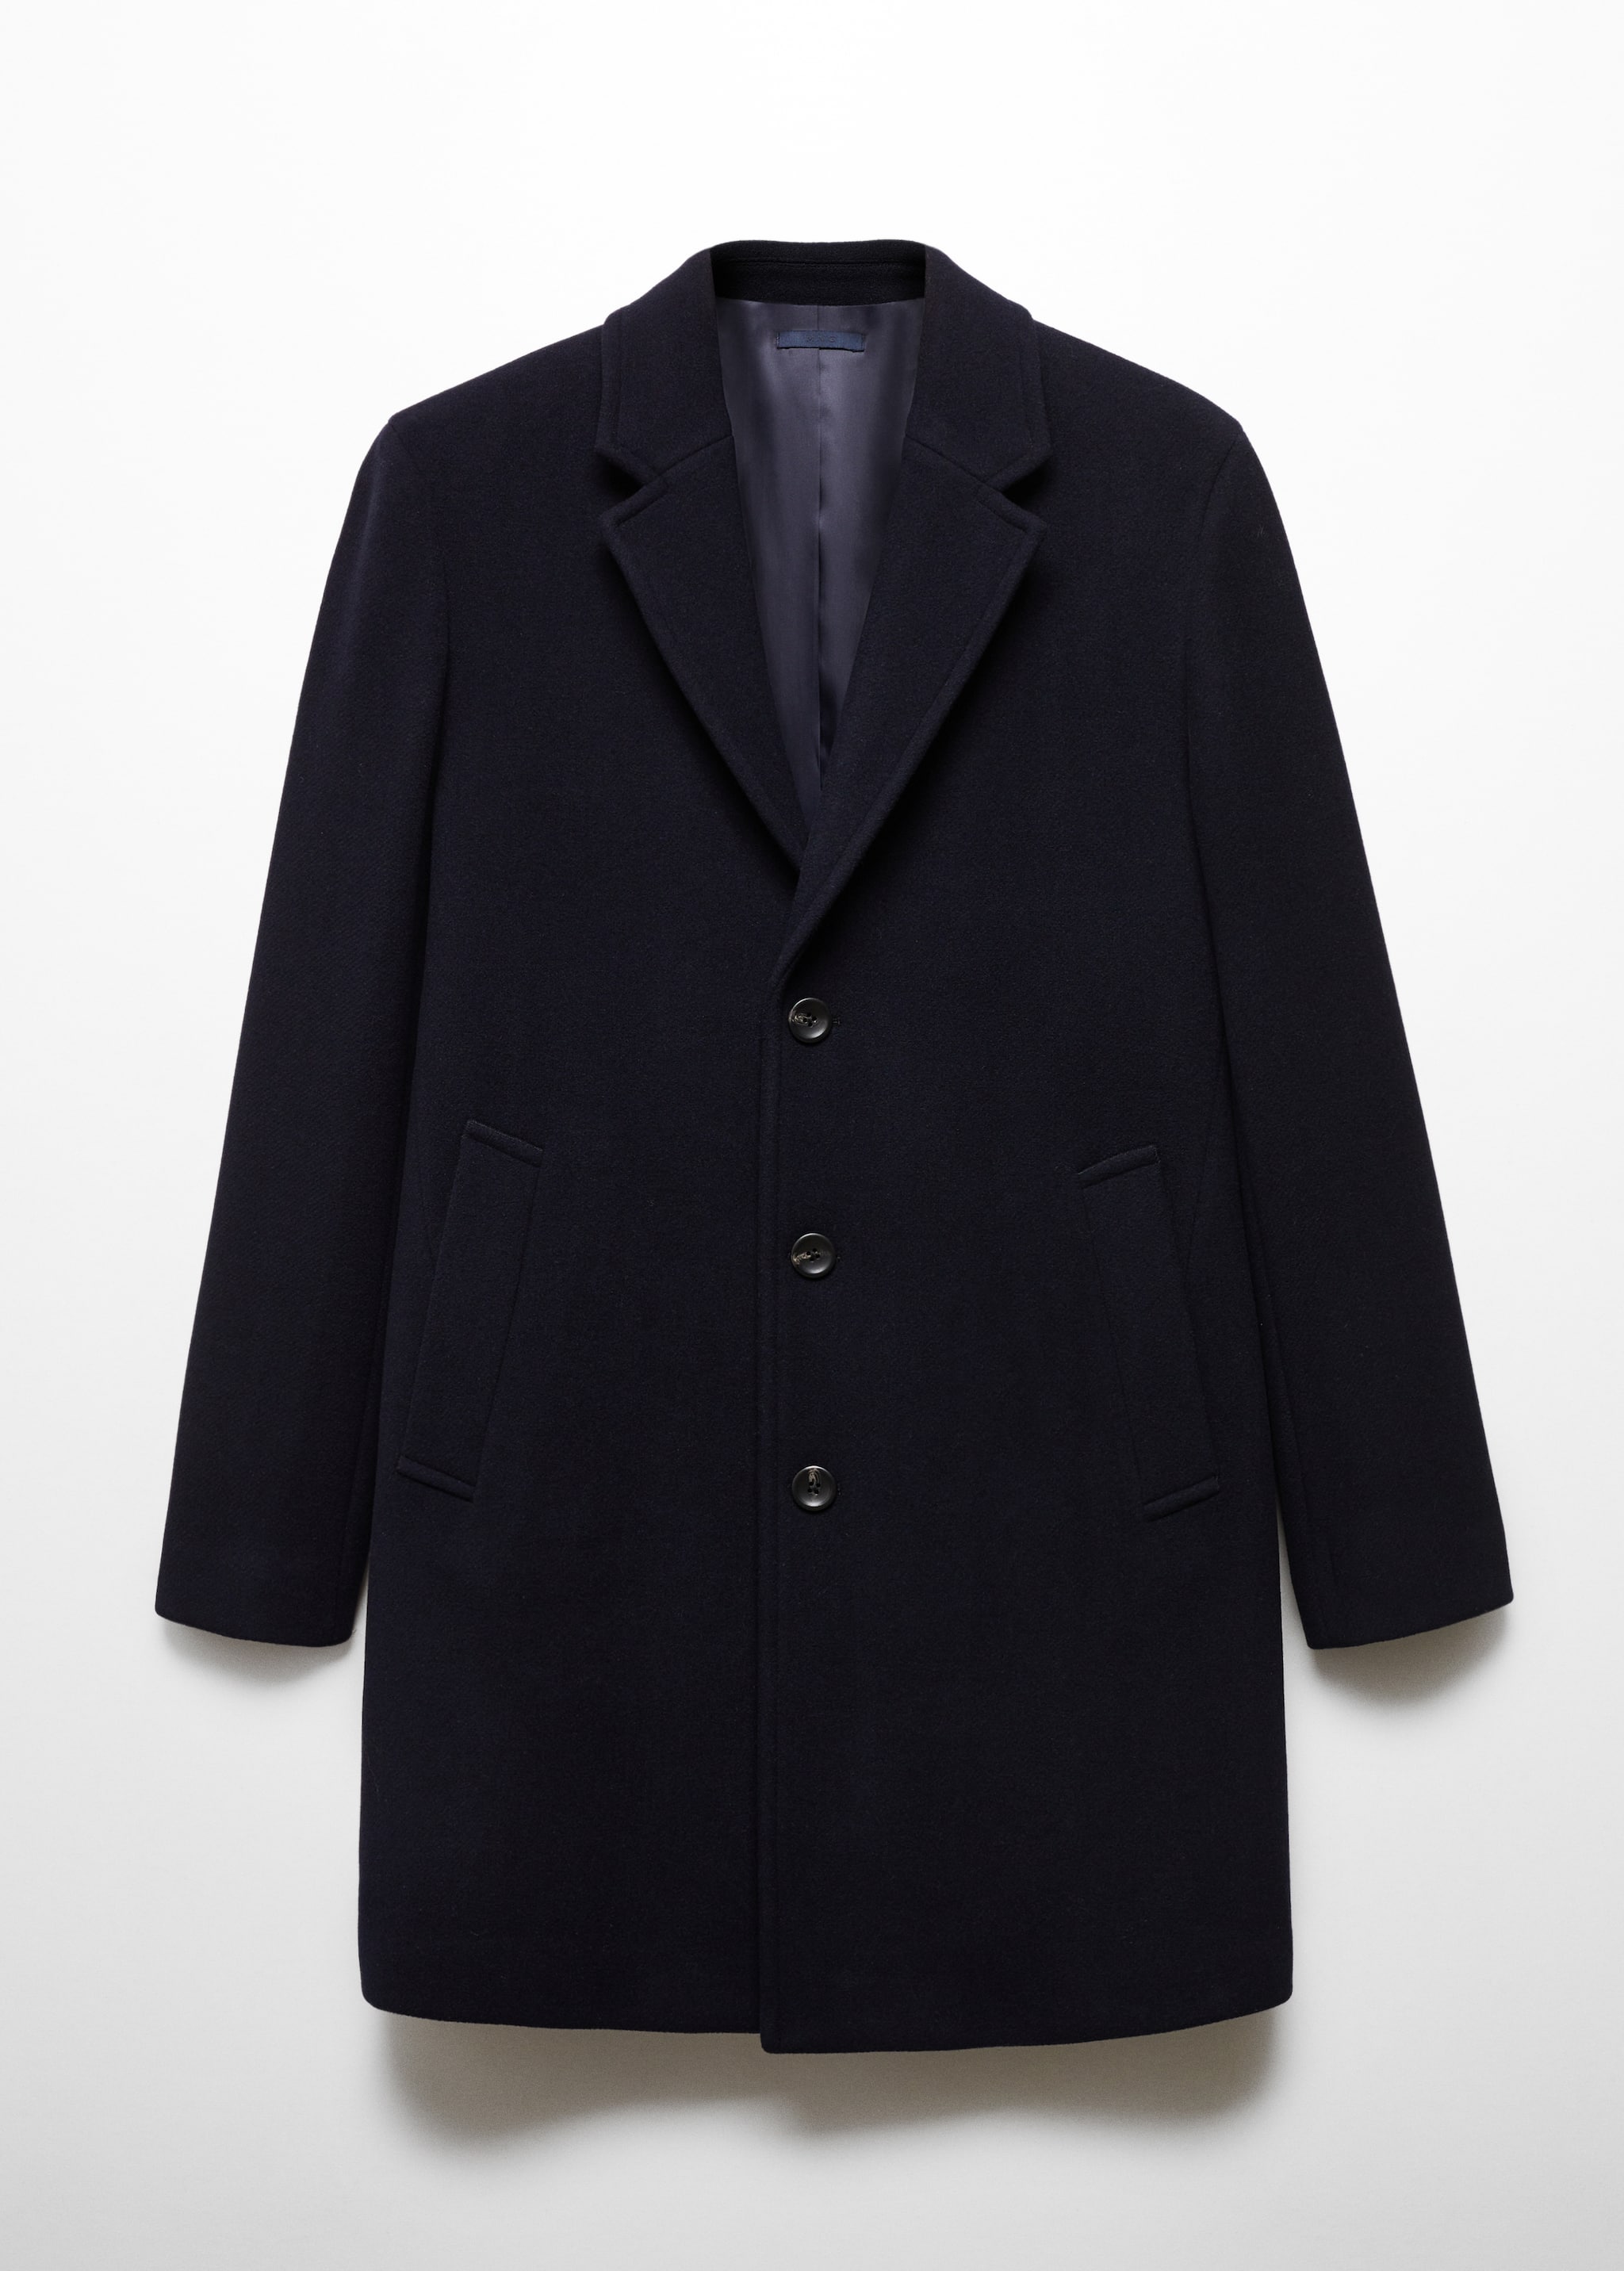 Легкое пальто из переработанной шерсти  - Изделие без модели